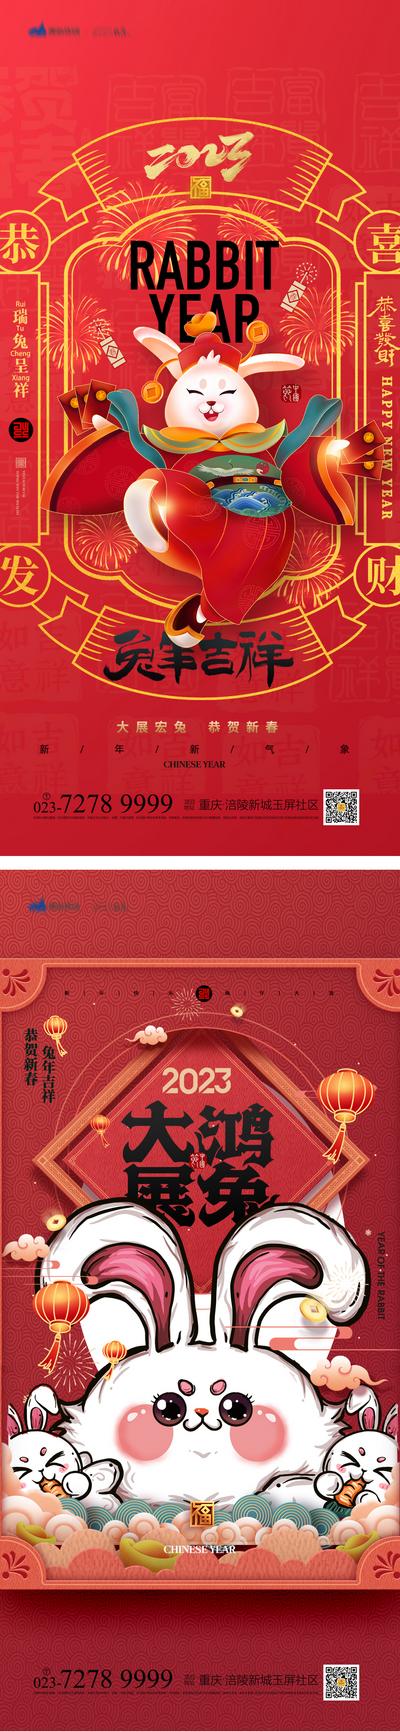 南门网 海报 中国传统节日 春节 新春 新年快乐 兔年 玉兔迎春 兔子 红色 喜庆 系列